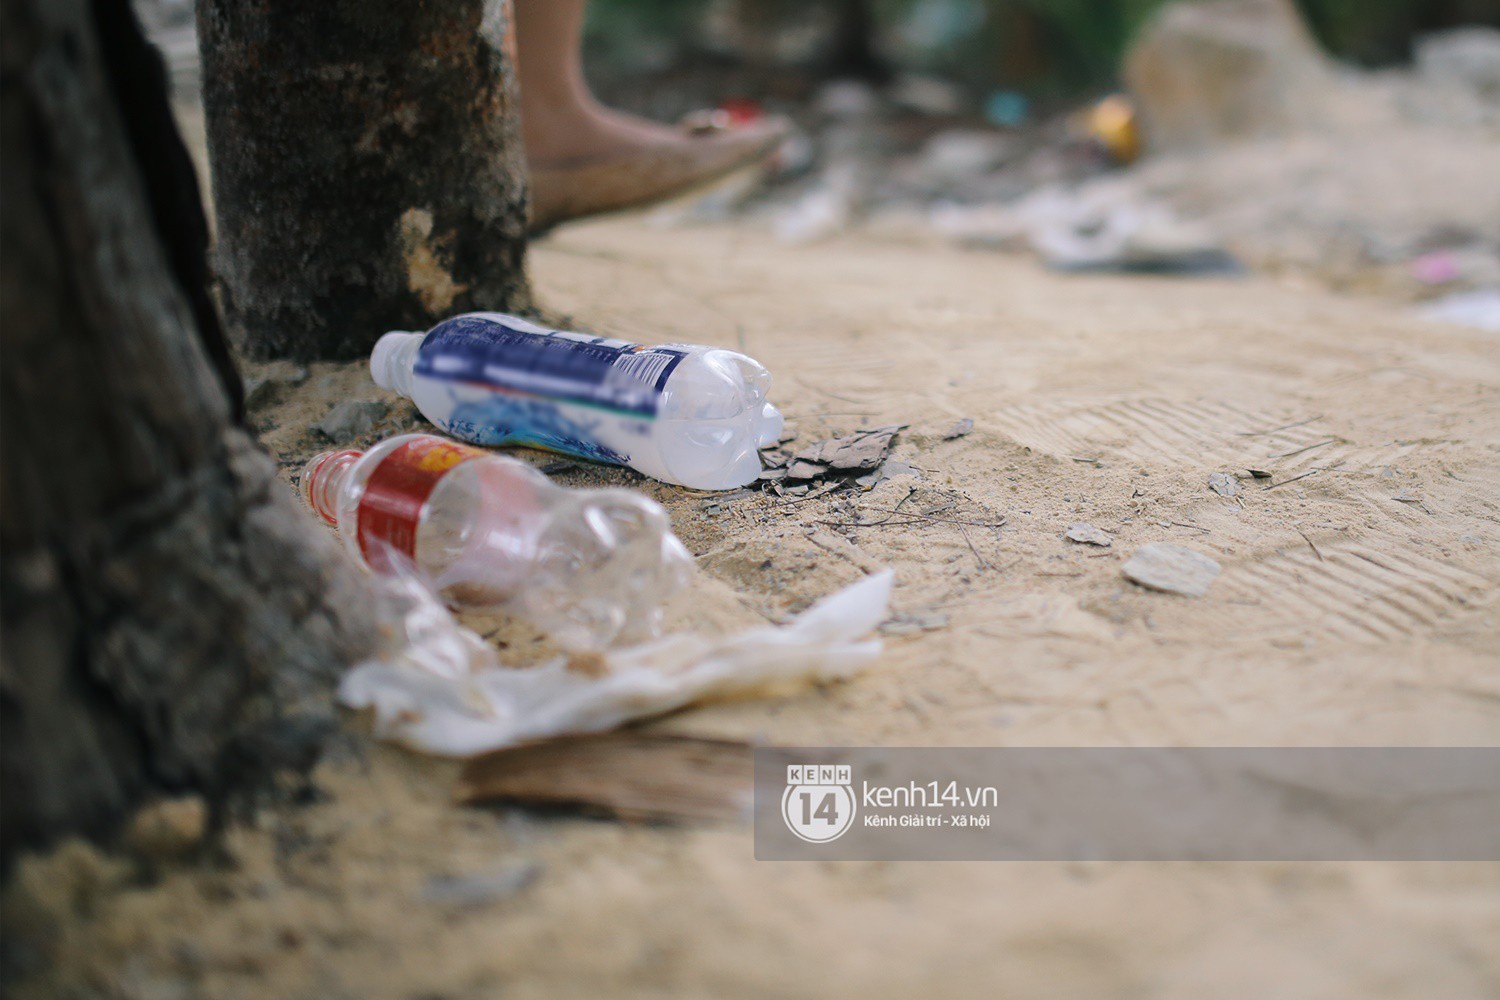 Nhiều bạn trẻ kéo đến Tuyệt tình cốc ở Đà Lạt để check-in dịp Tết, rác thải bắt đầu xuất hiện - Ảnh 8.